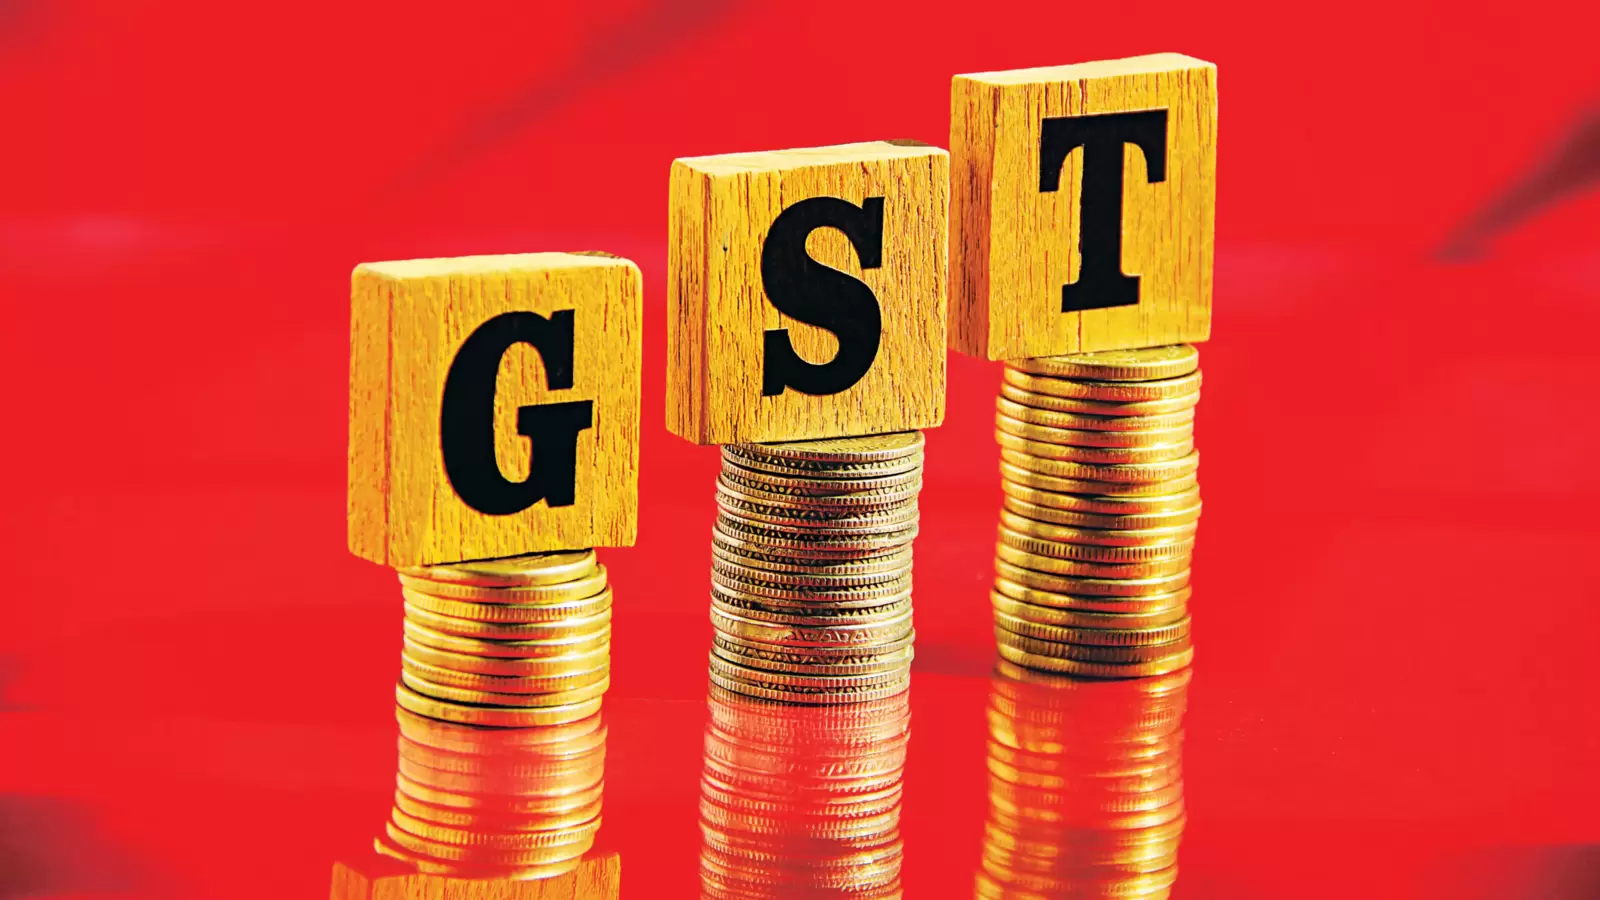 मार्च में GST संग्रह 13% बढ़कर ₹1.60 लाख करोड़ हुआ: रिपोर्ट